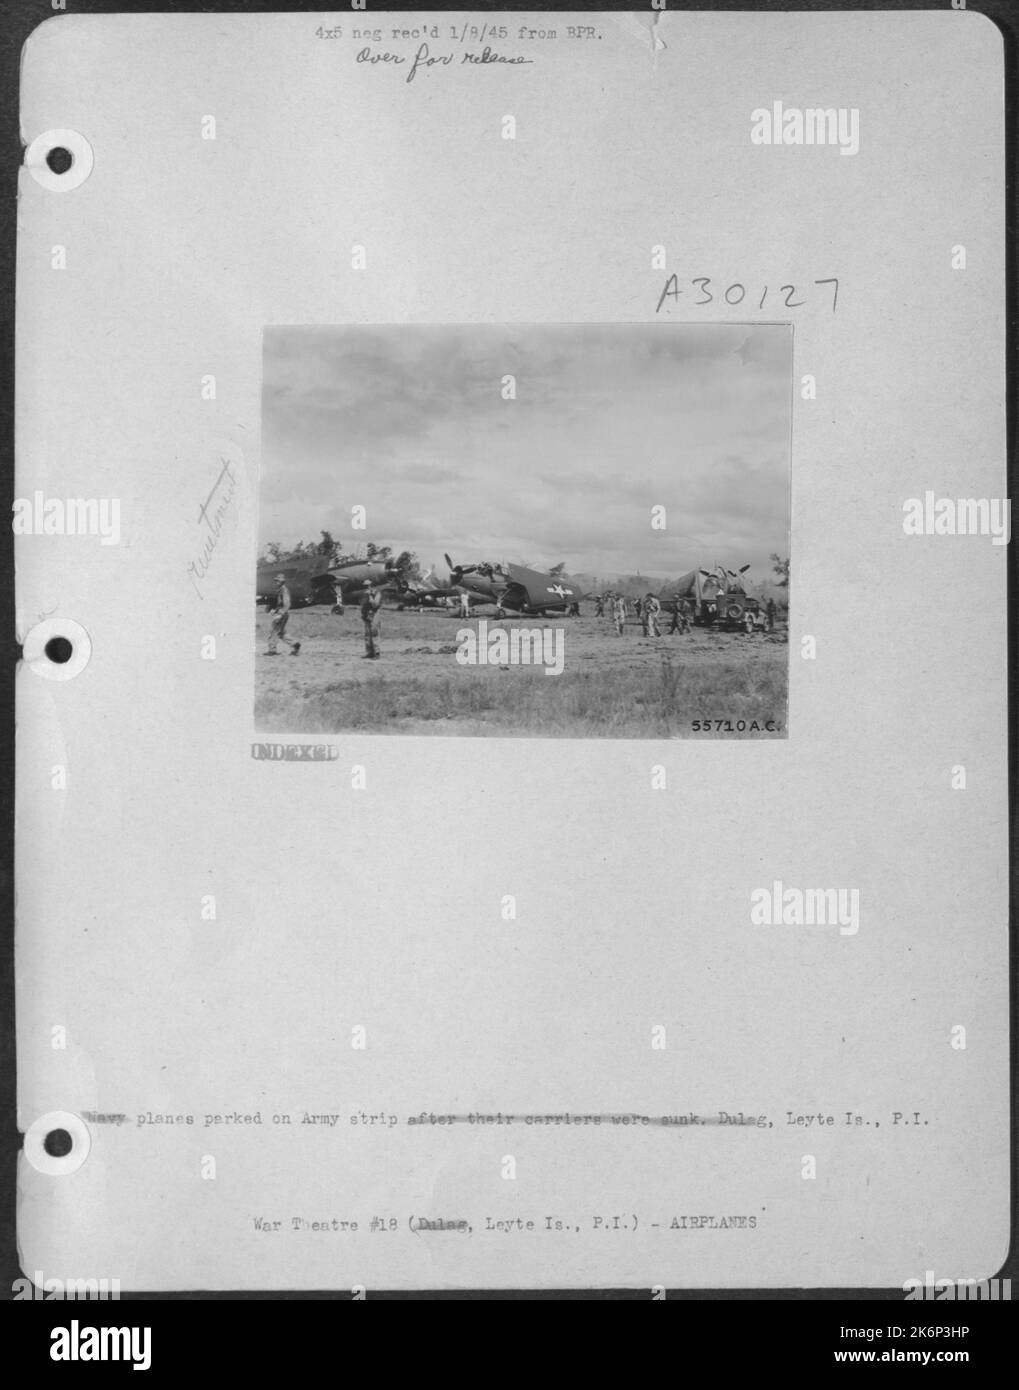 Aerei della Marina parcheggiati sulla striscia dell'esercito dopo che i loro vettori sono stati affondati, Dulag, Leyte is., P.I. Foto Stock